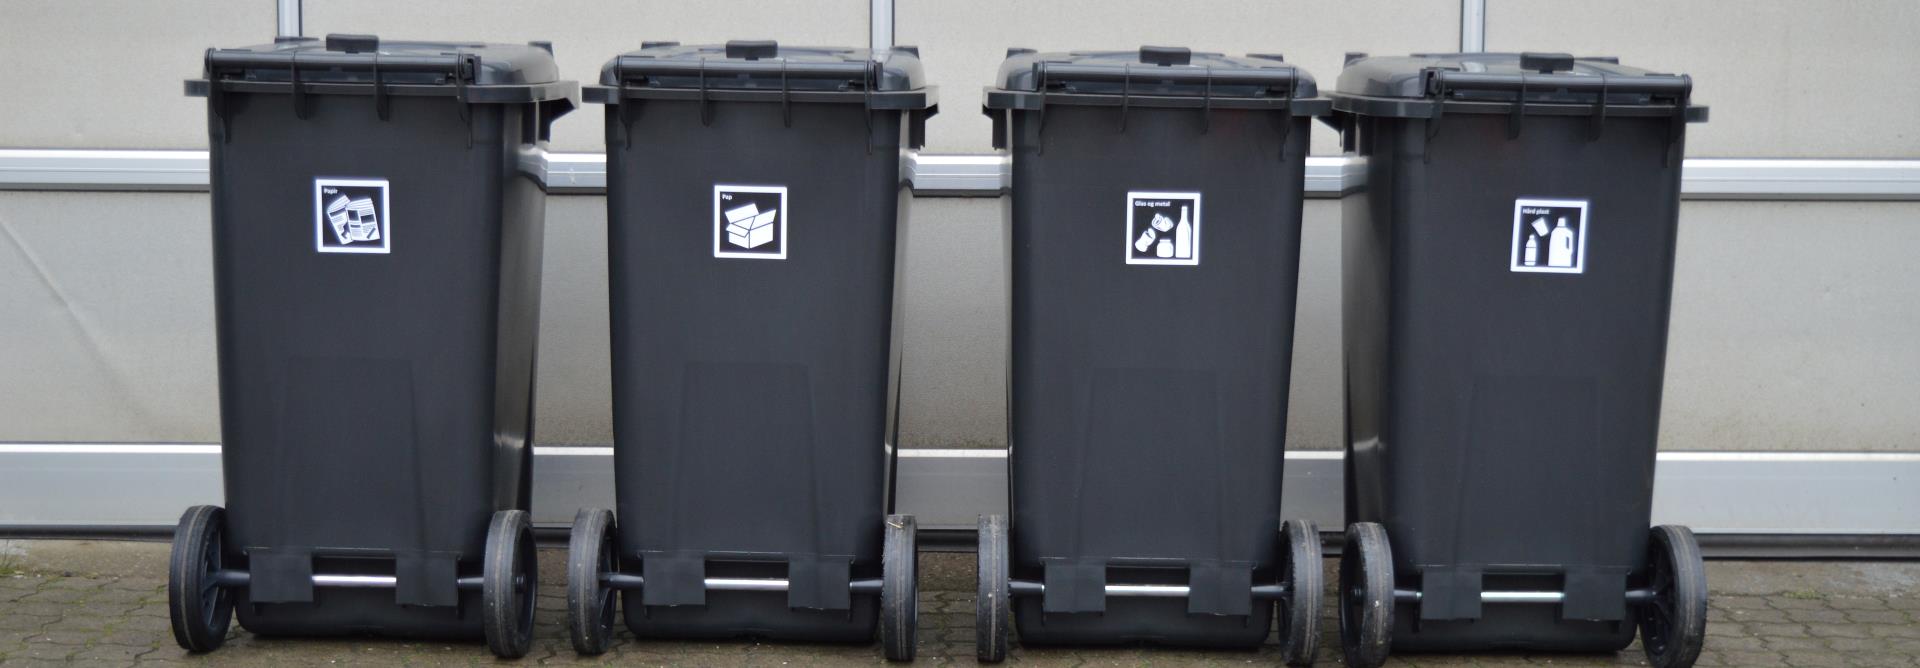 Fire sorte containere står ved siden af hinanden op ad en port. På hver container er der et piktogram, der illustrerer hvad der må komme i. Fra venstre er det papir, derefter pap, så glas og metal og den sidste container er til hård plast.